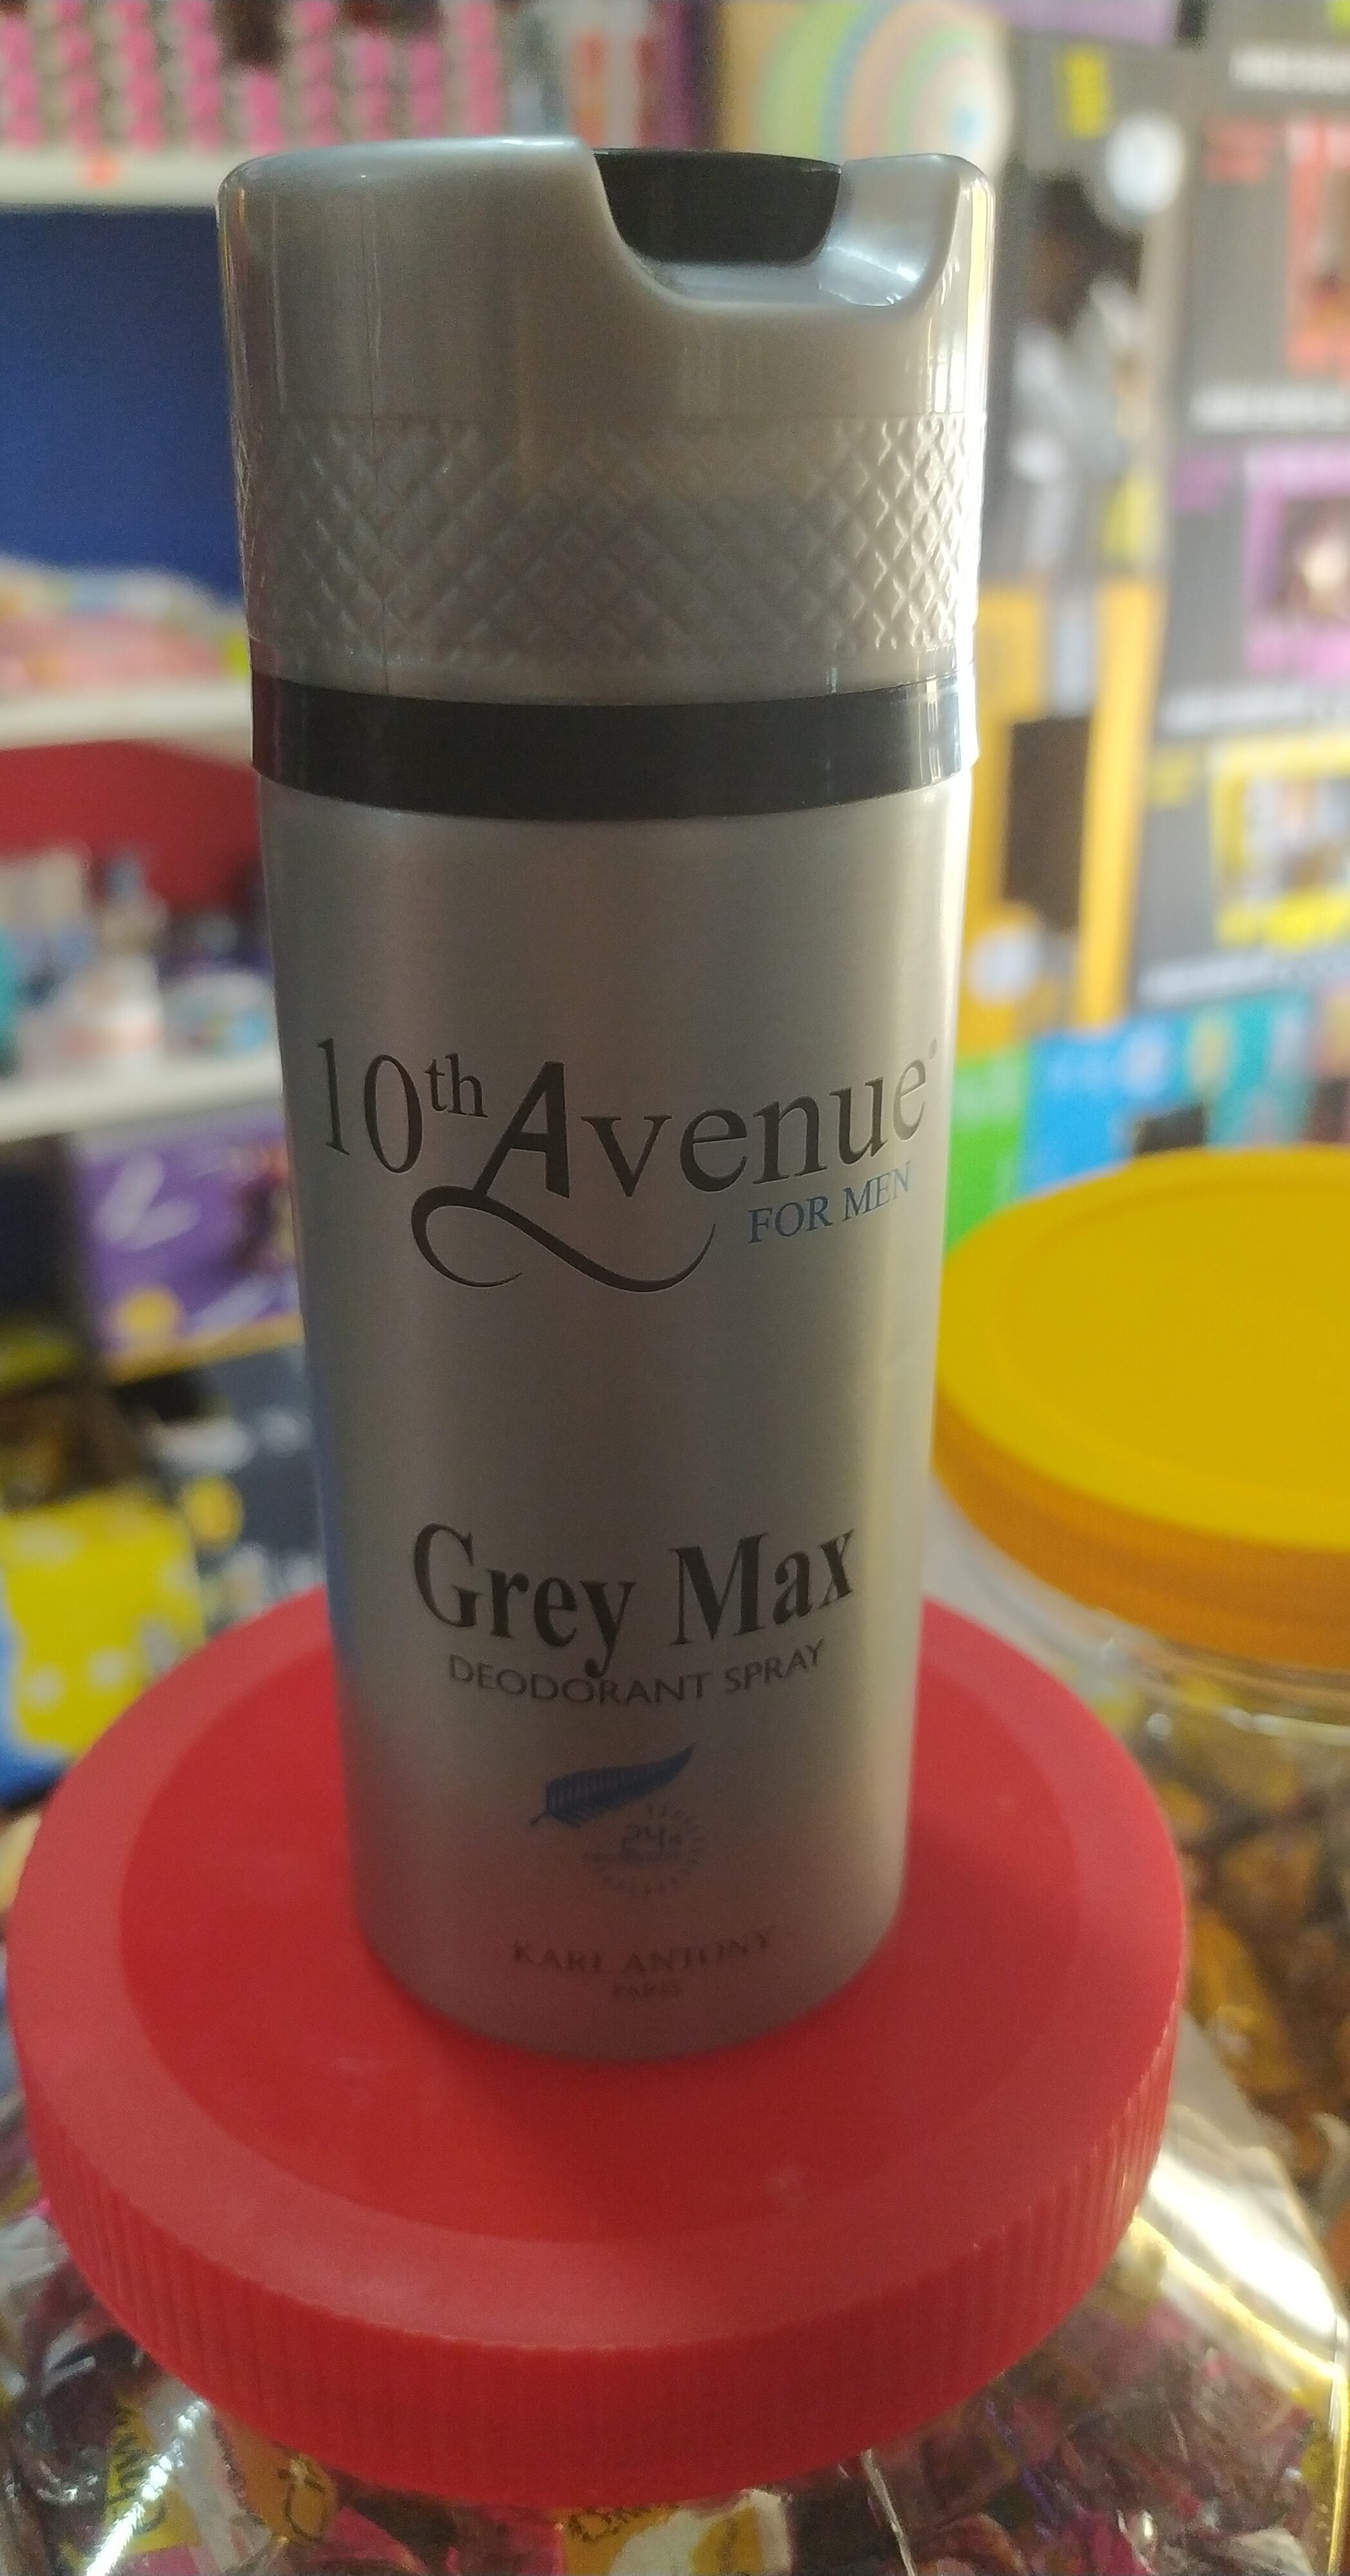 10th avenue grey max - Tuote - en